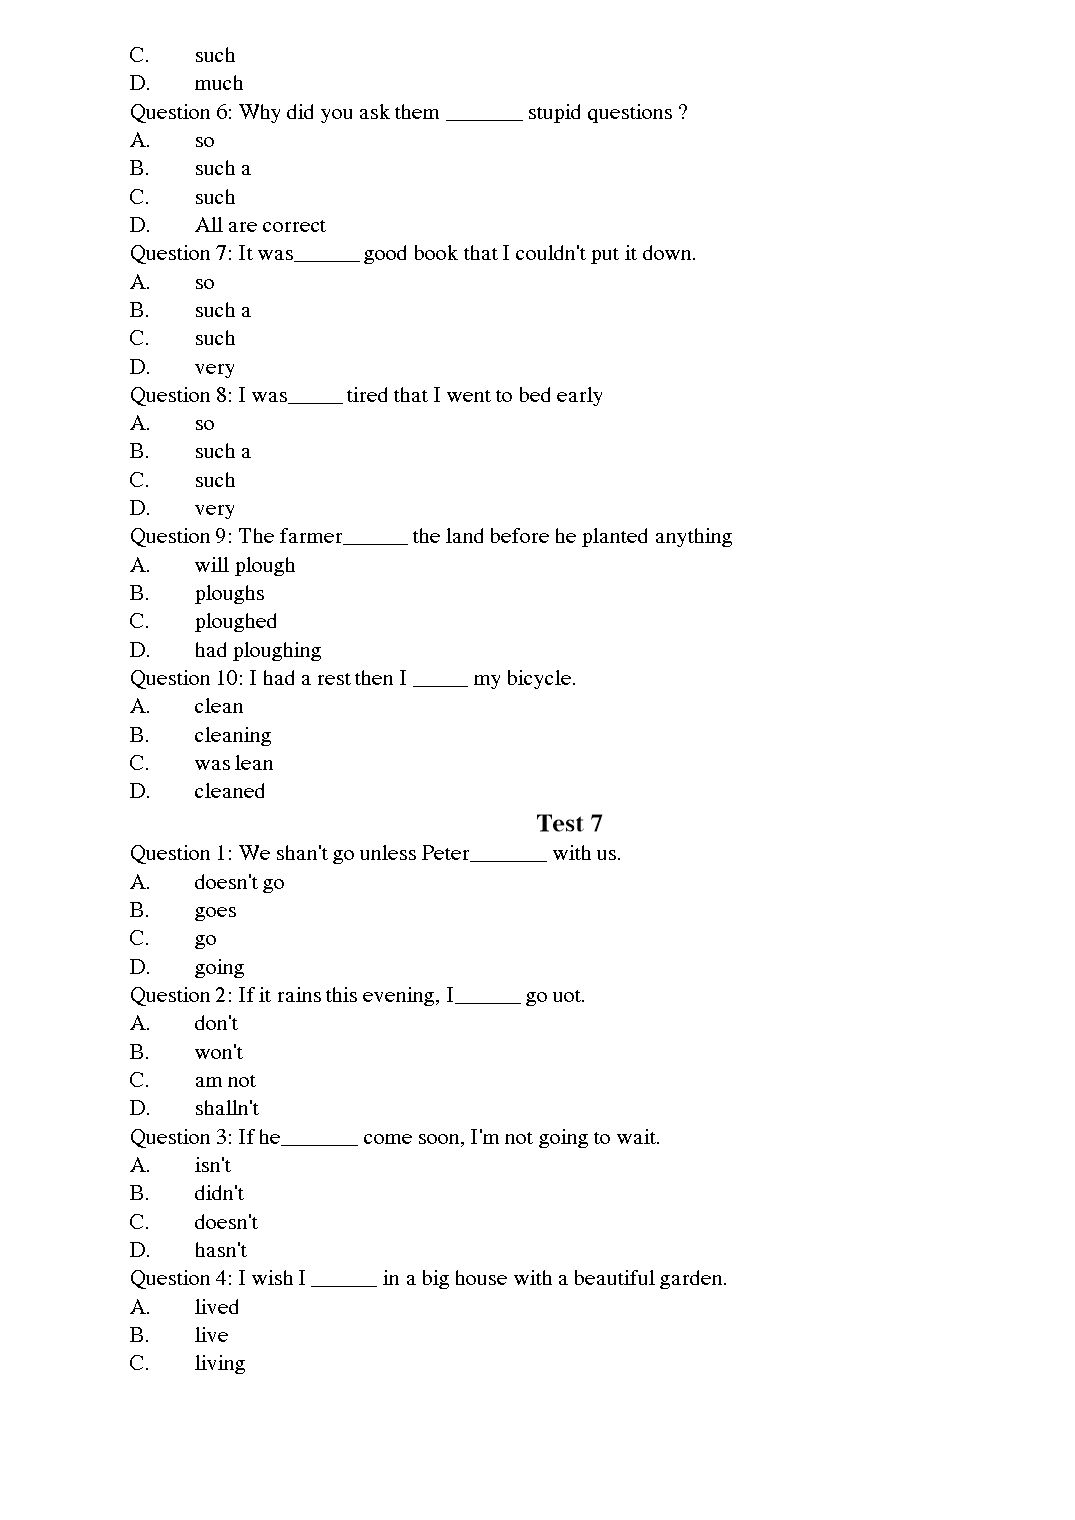 Tiếng Anh - Level A trang 7